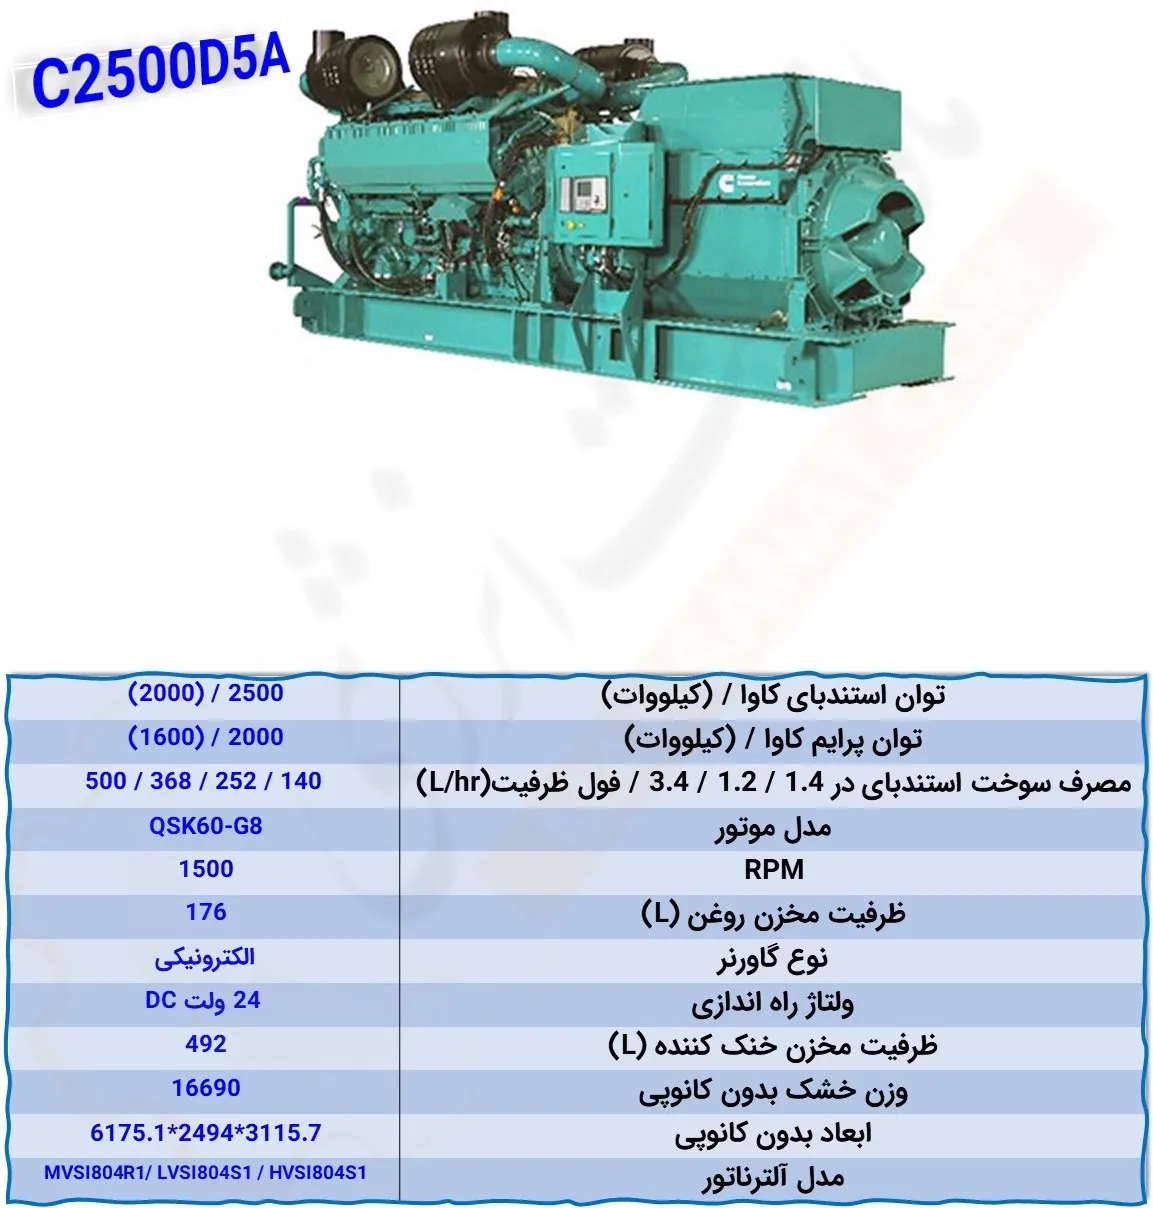 C2500D5A - ماه صنعت انرژی